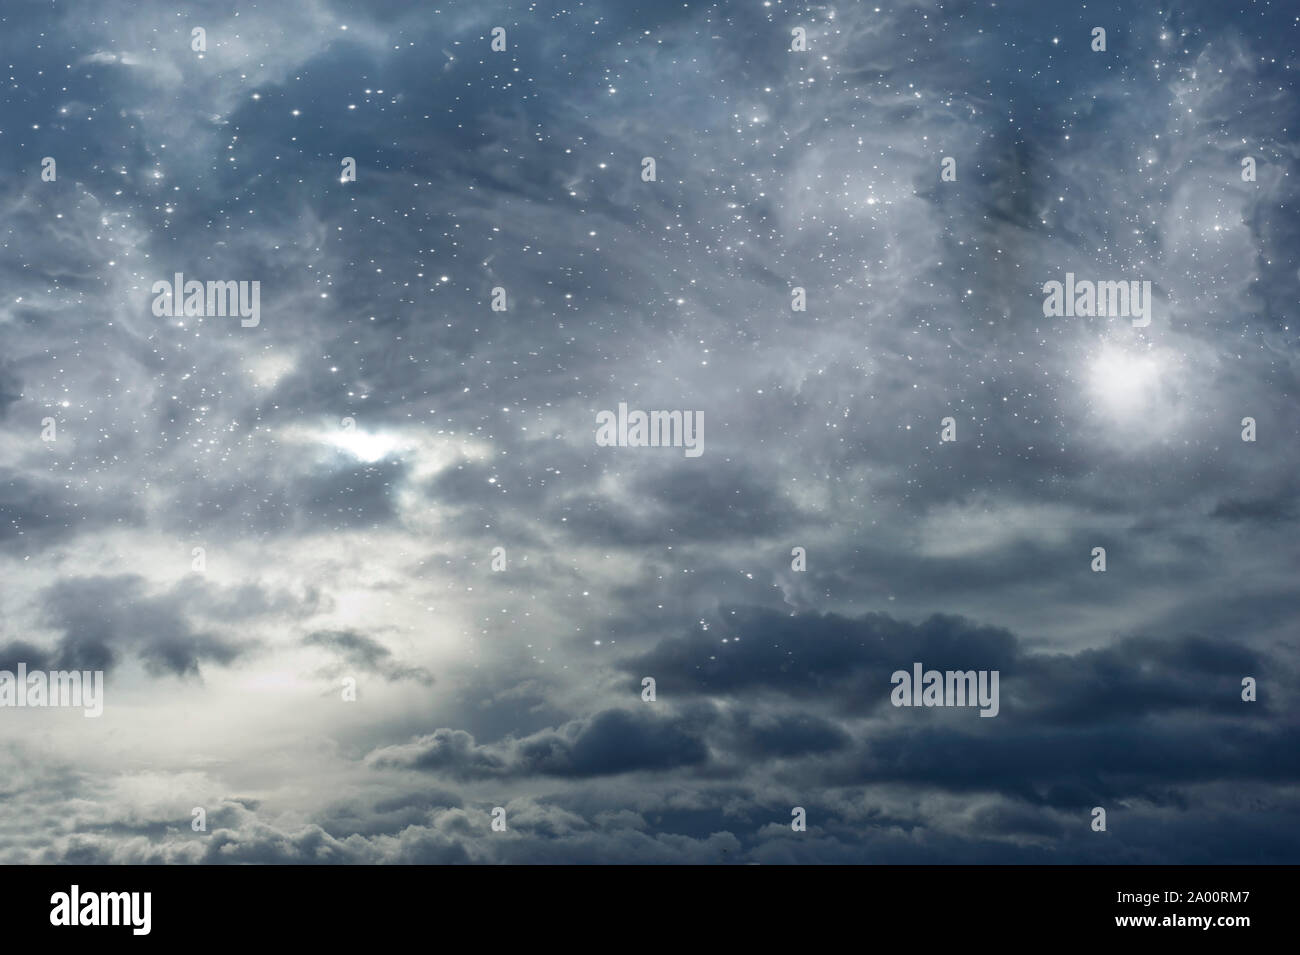 Mystische Hintergrund der Wolken und Sterne mit Kopie Raum Stockfoto